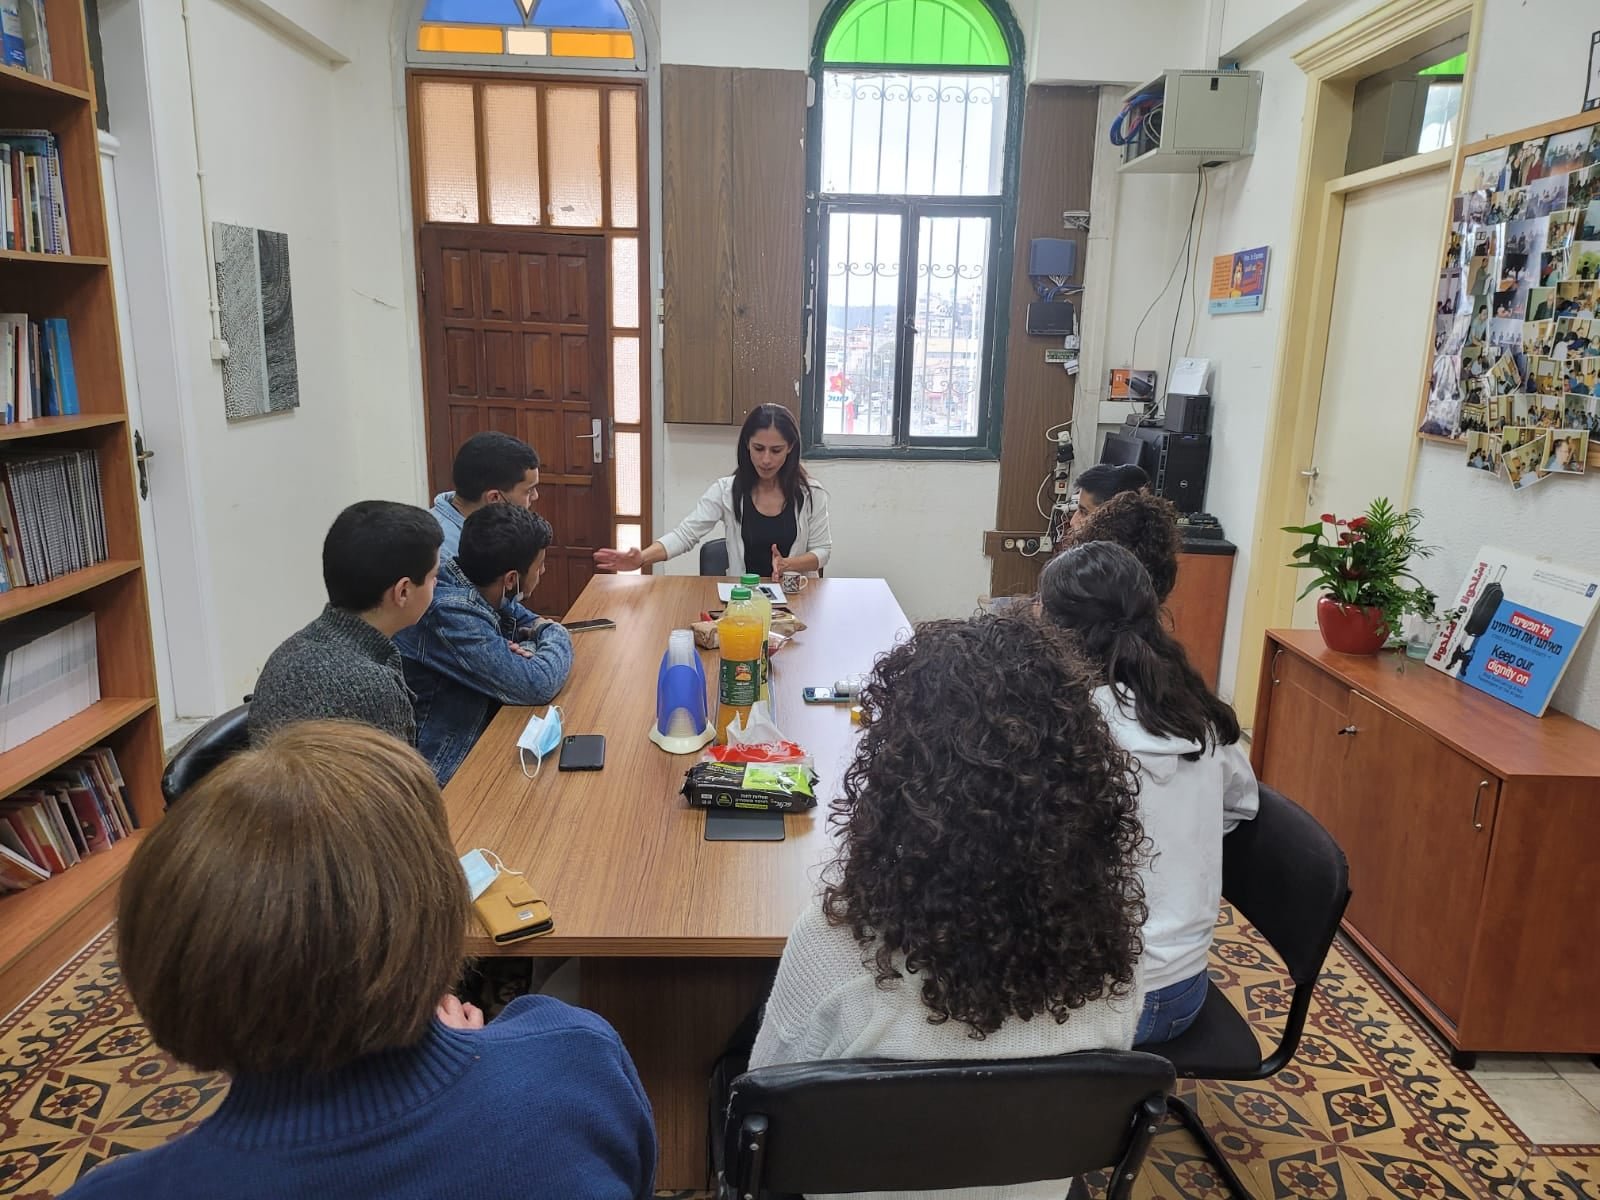 مركز اعلام ووحدة النهوض بمكانة المرأة يطلقان مشروعا تدريبيا لمواجة العنف والجريمة في الناصرة-1